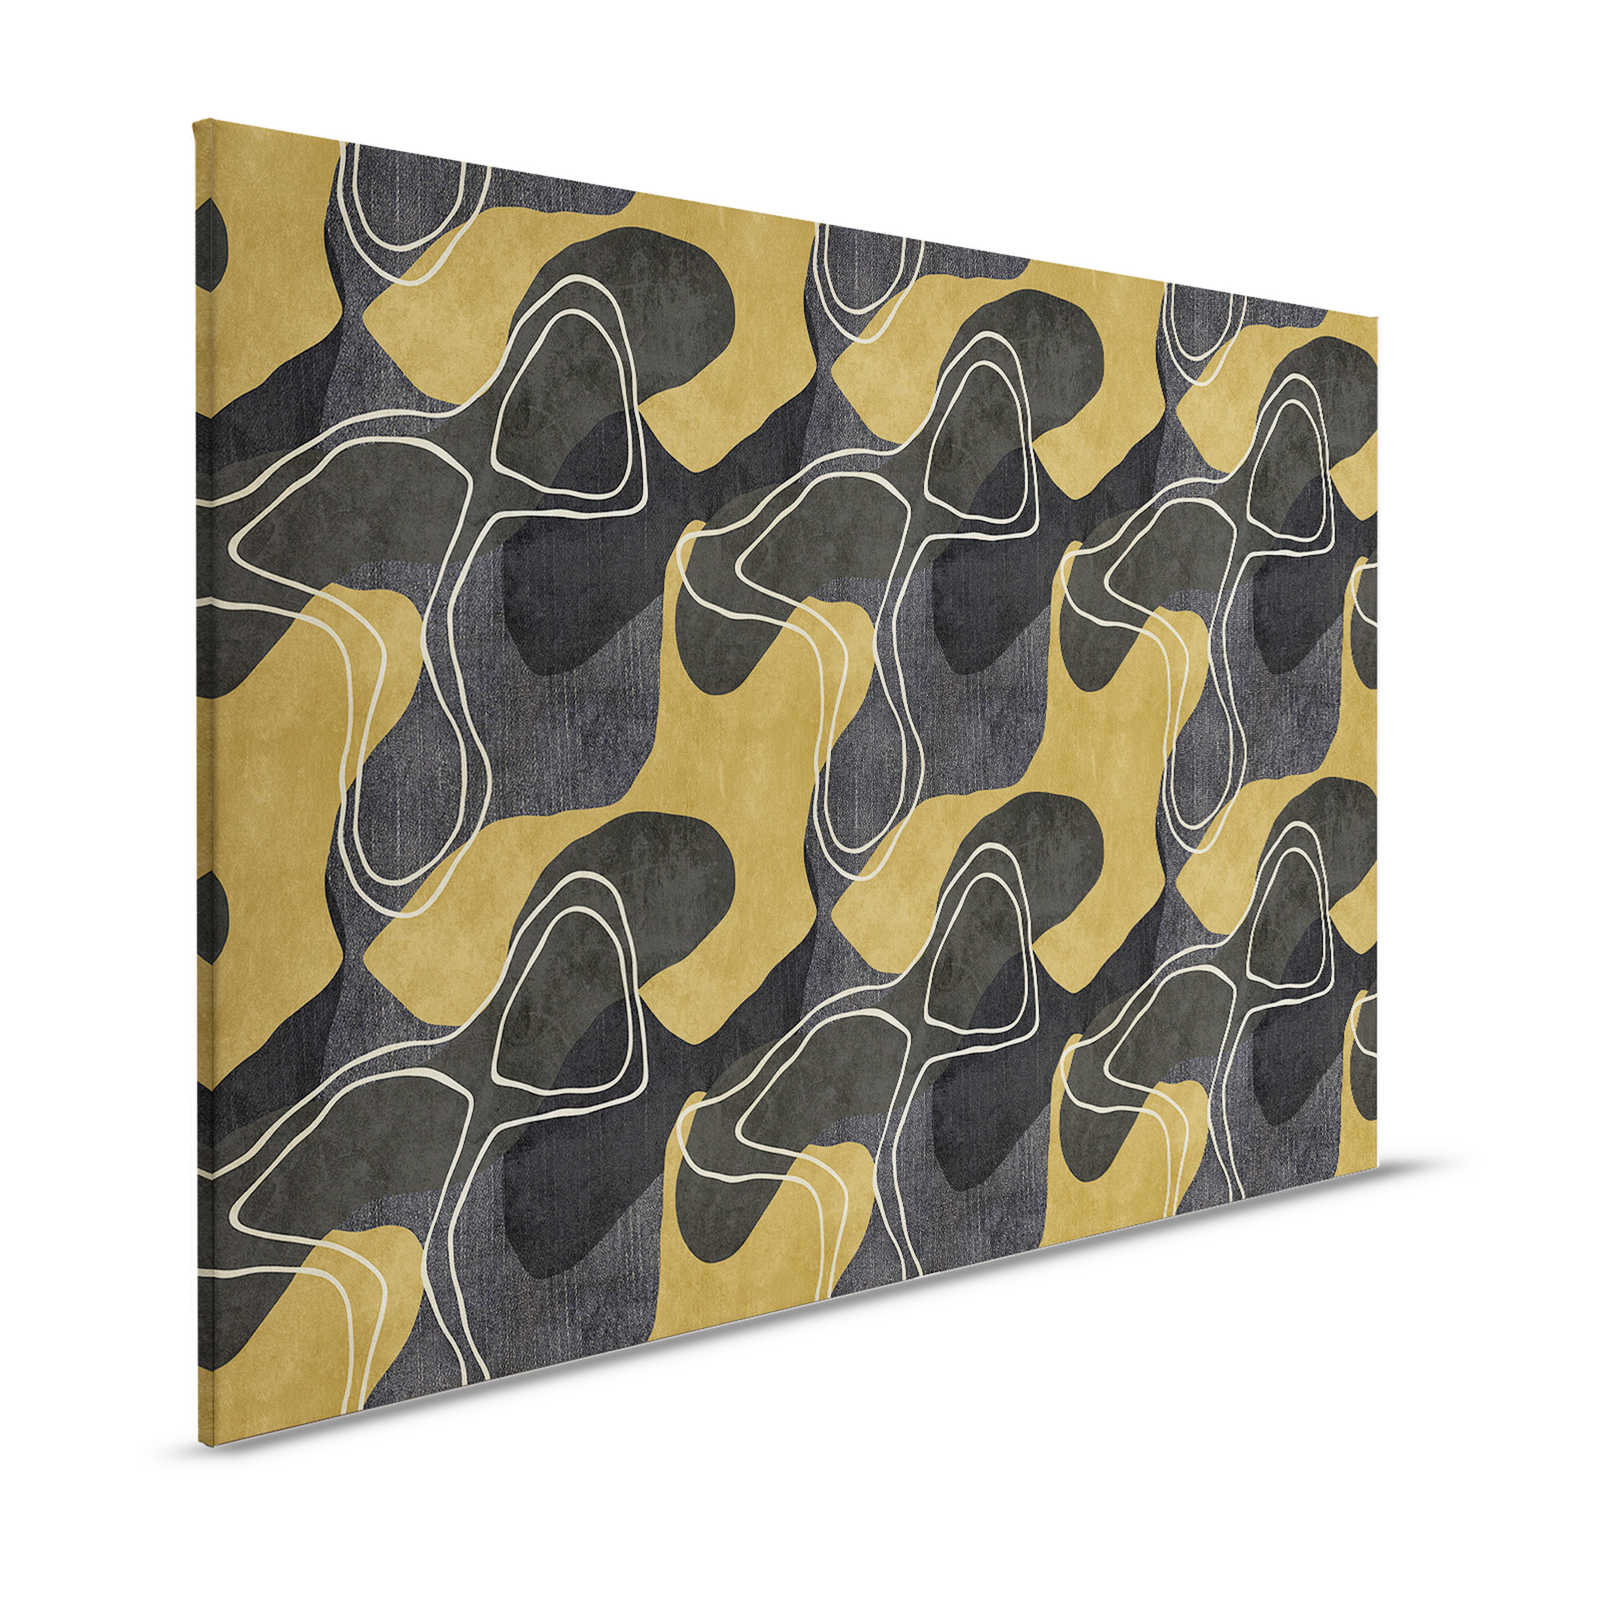 Terra 2 - Toile abstraite motif ethnique en couleurs naturelles - 1,20 m x 0,80 m
